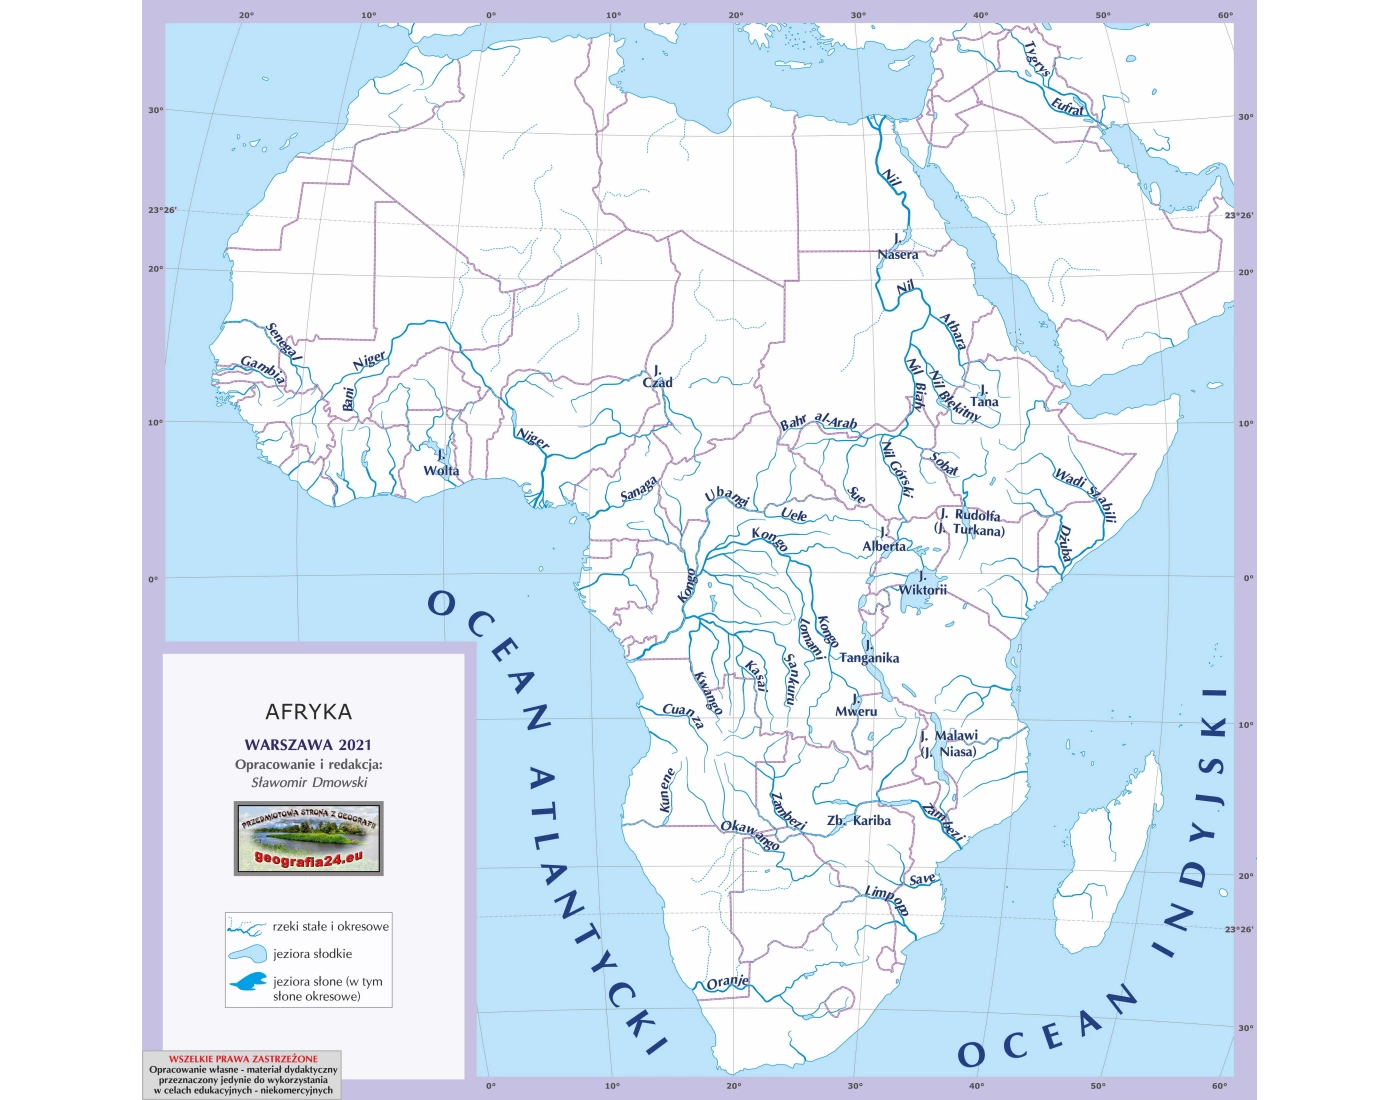 Hydrosfera - afryka (wszystko) Quiz